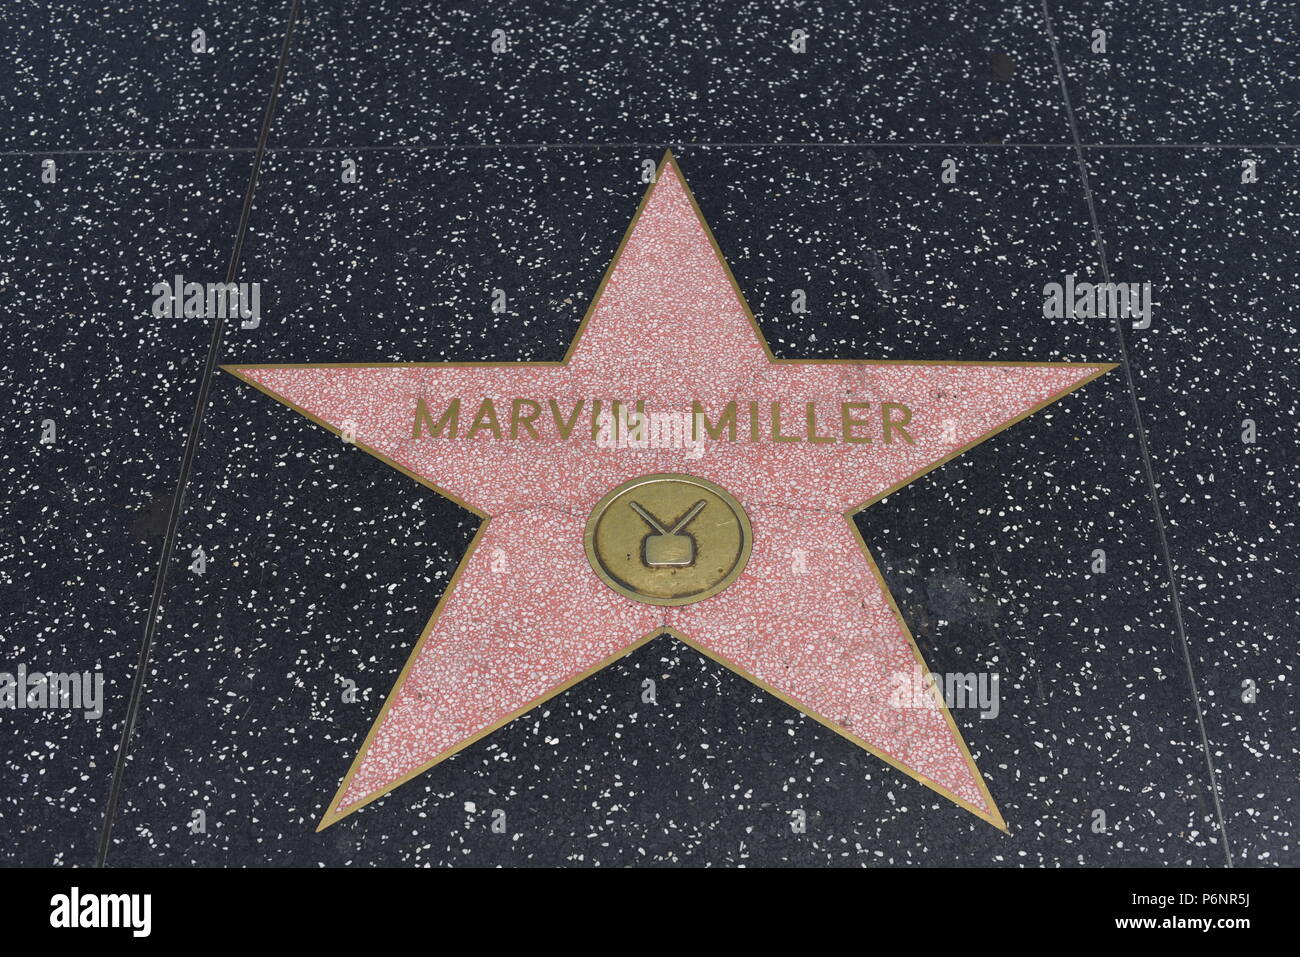 HOLLYWOOD, CA - 29 Giugno: Marvin Miller della stella sulla Hollywood Walk of Fame in Hollywood, la California il 29 giugno 2018. Foto Stock